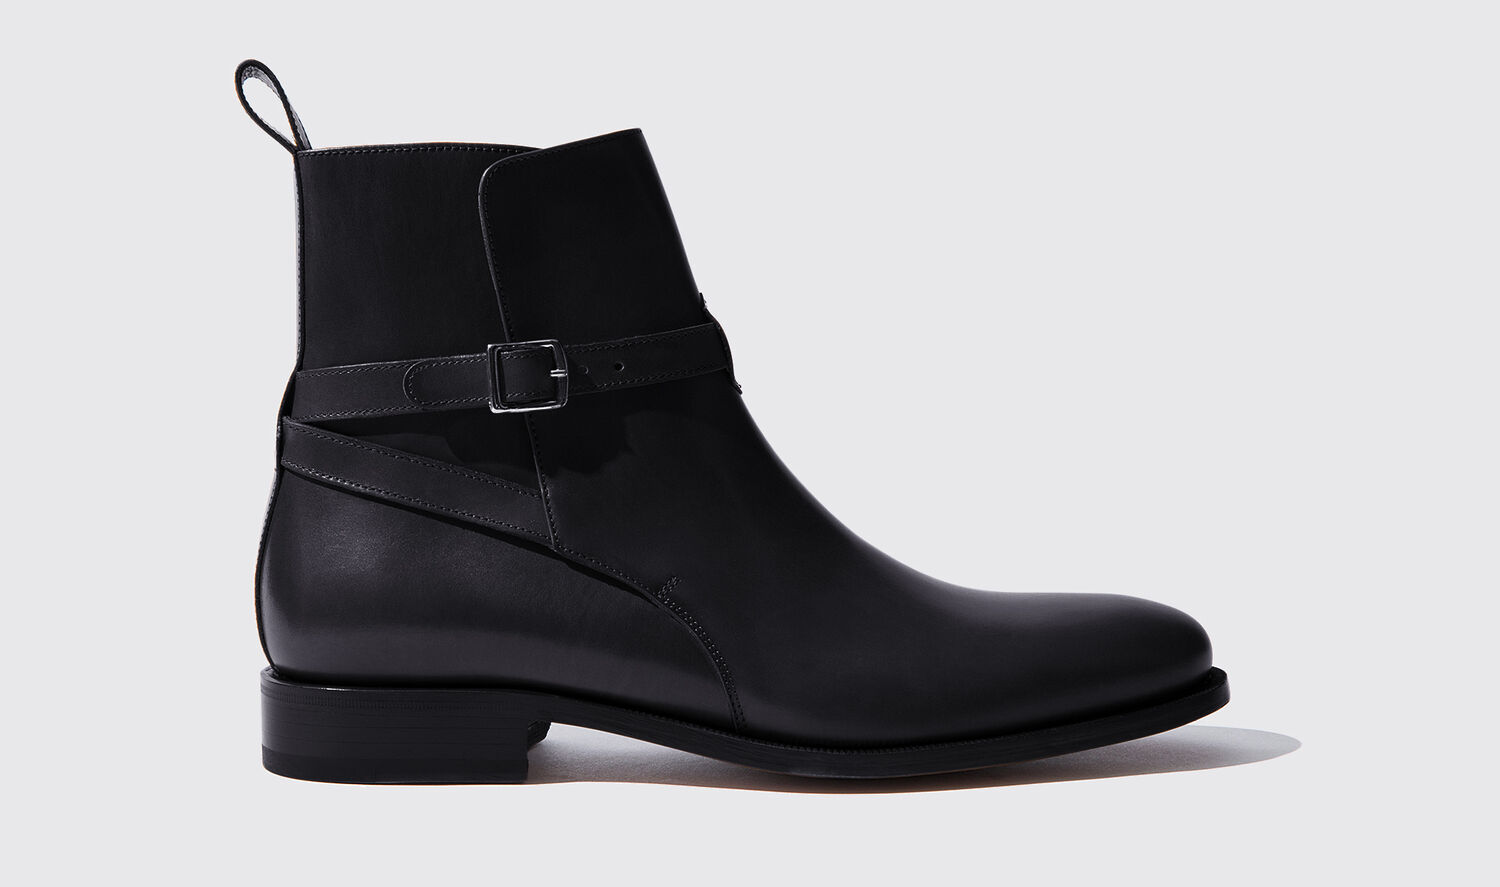 Scarosso Jodhpur Boots Libero Nero Calf Leather In Black Calf